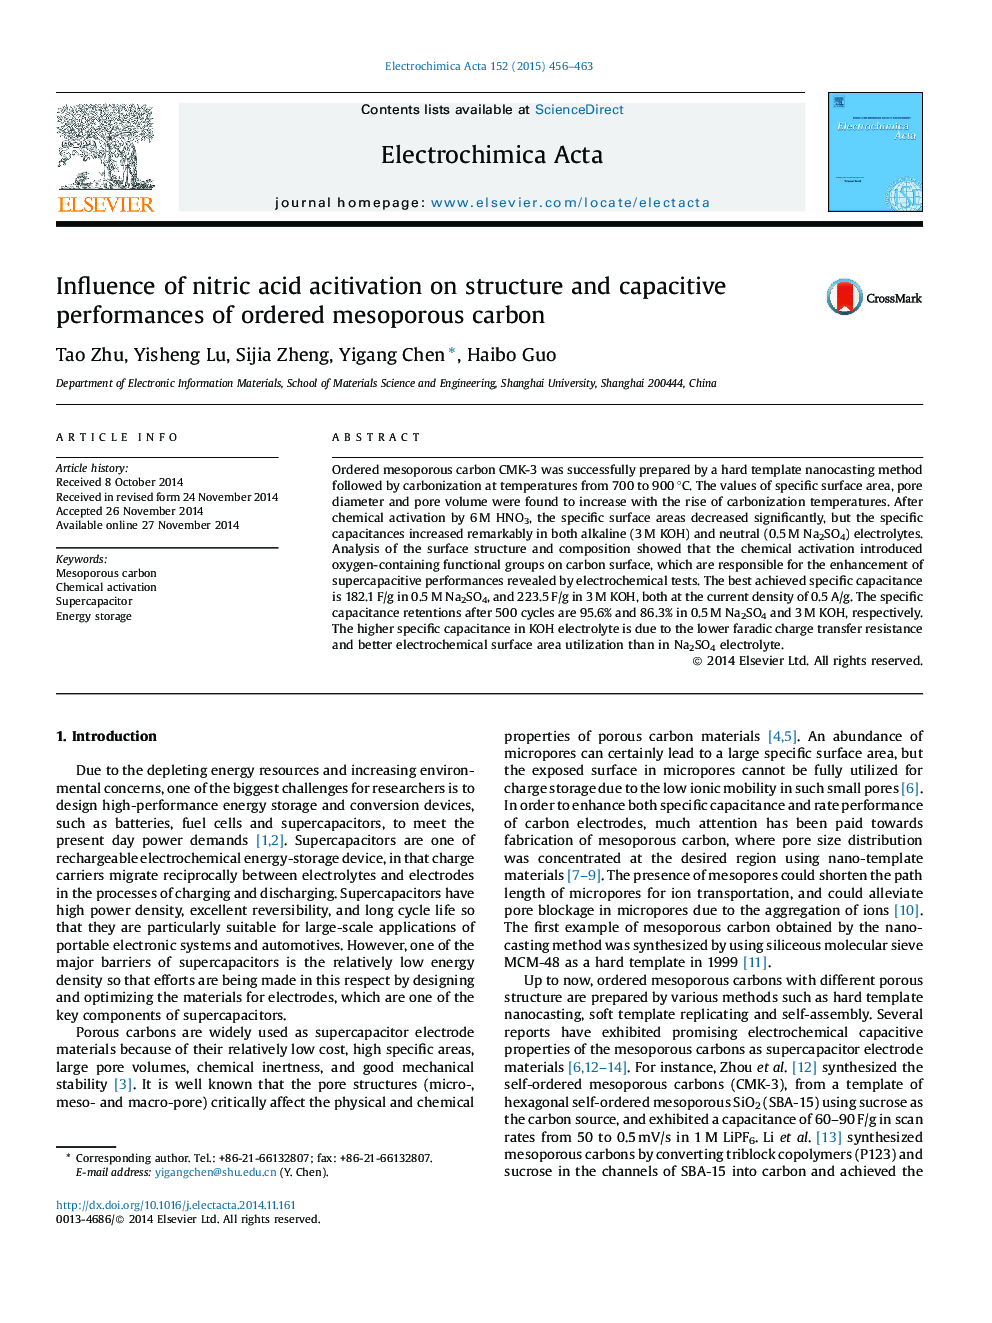 تأثیر فعال سازی اسید نیتریک بر ساختار و عملکرد خازنی کربن مضاعف منظم 